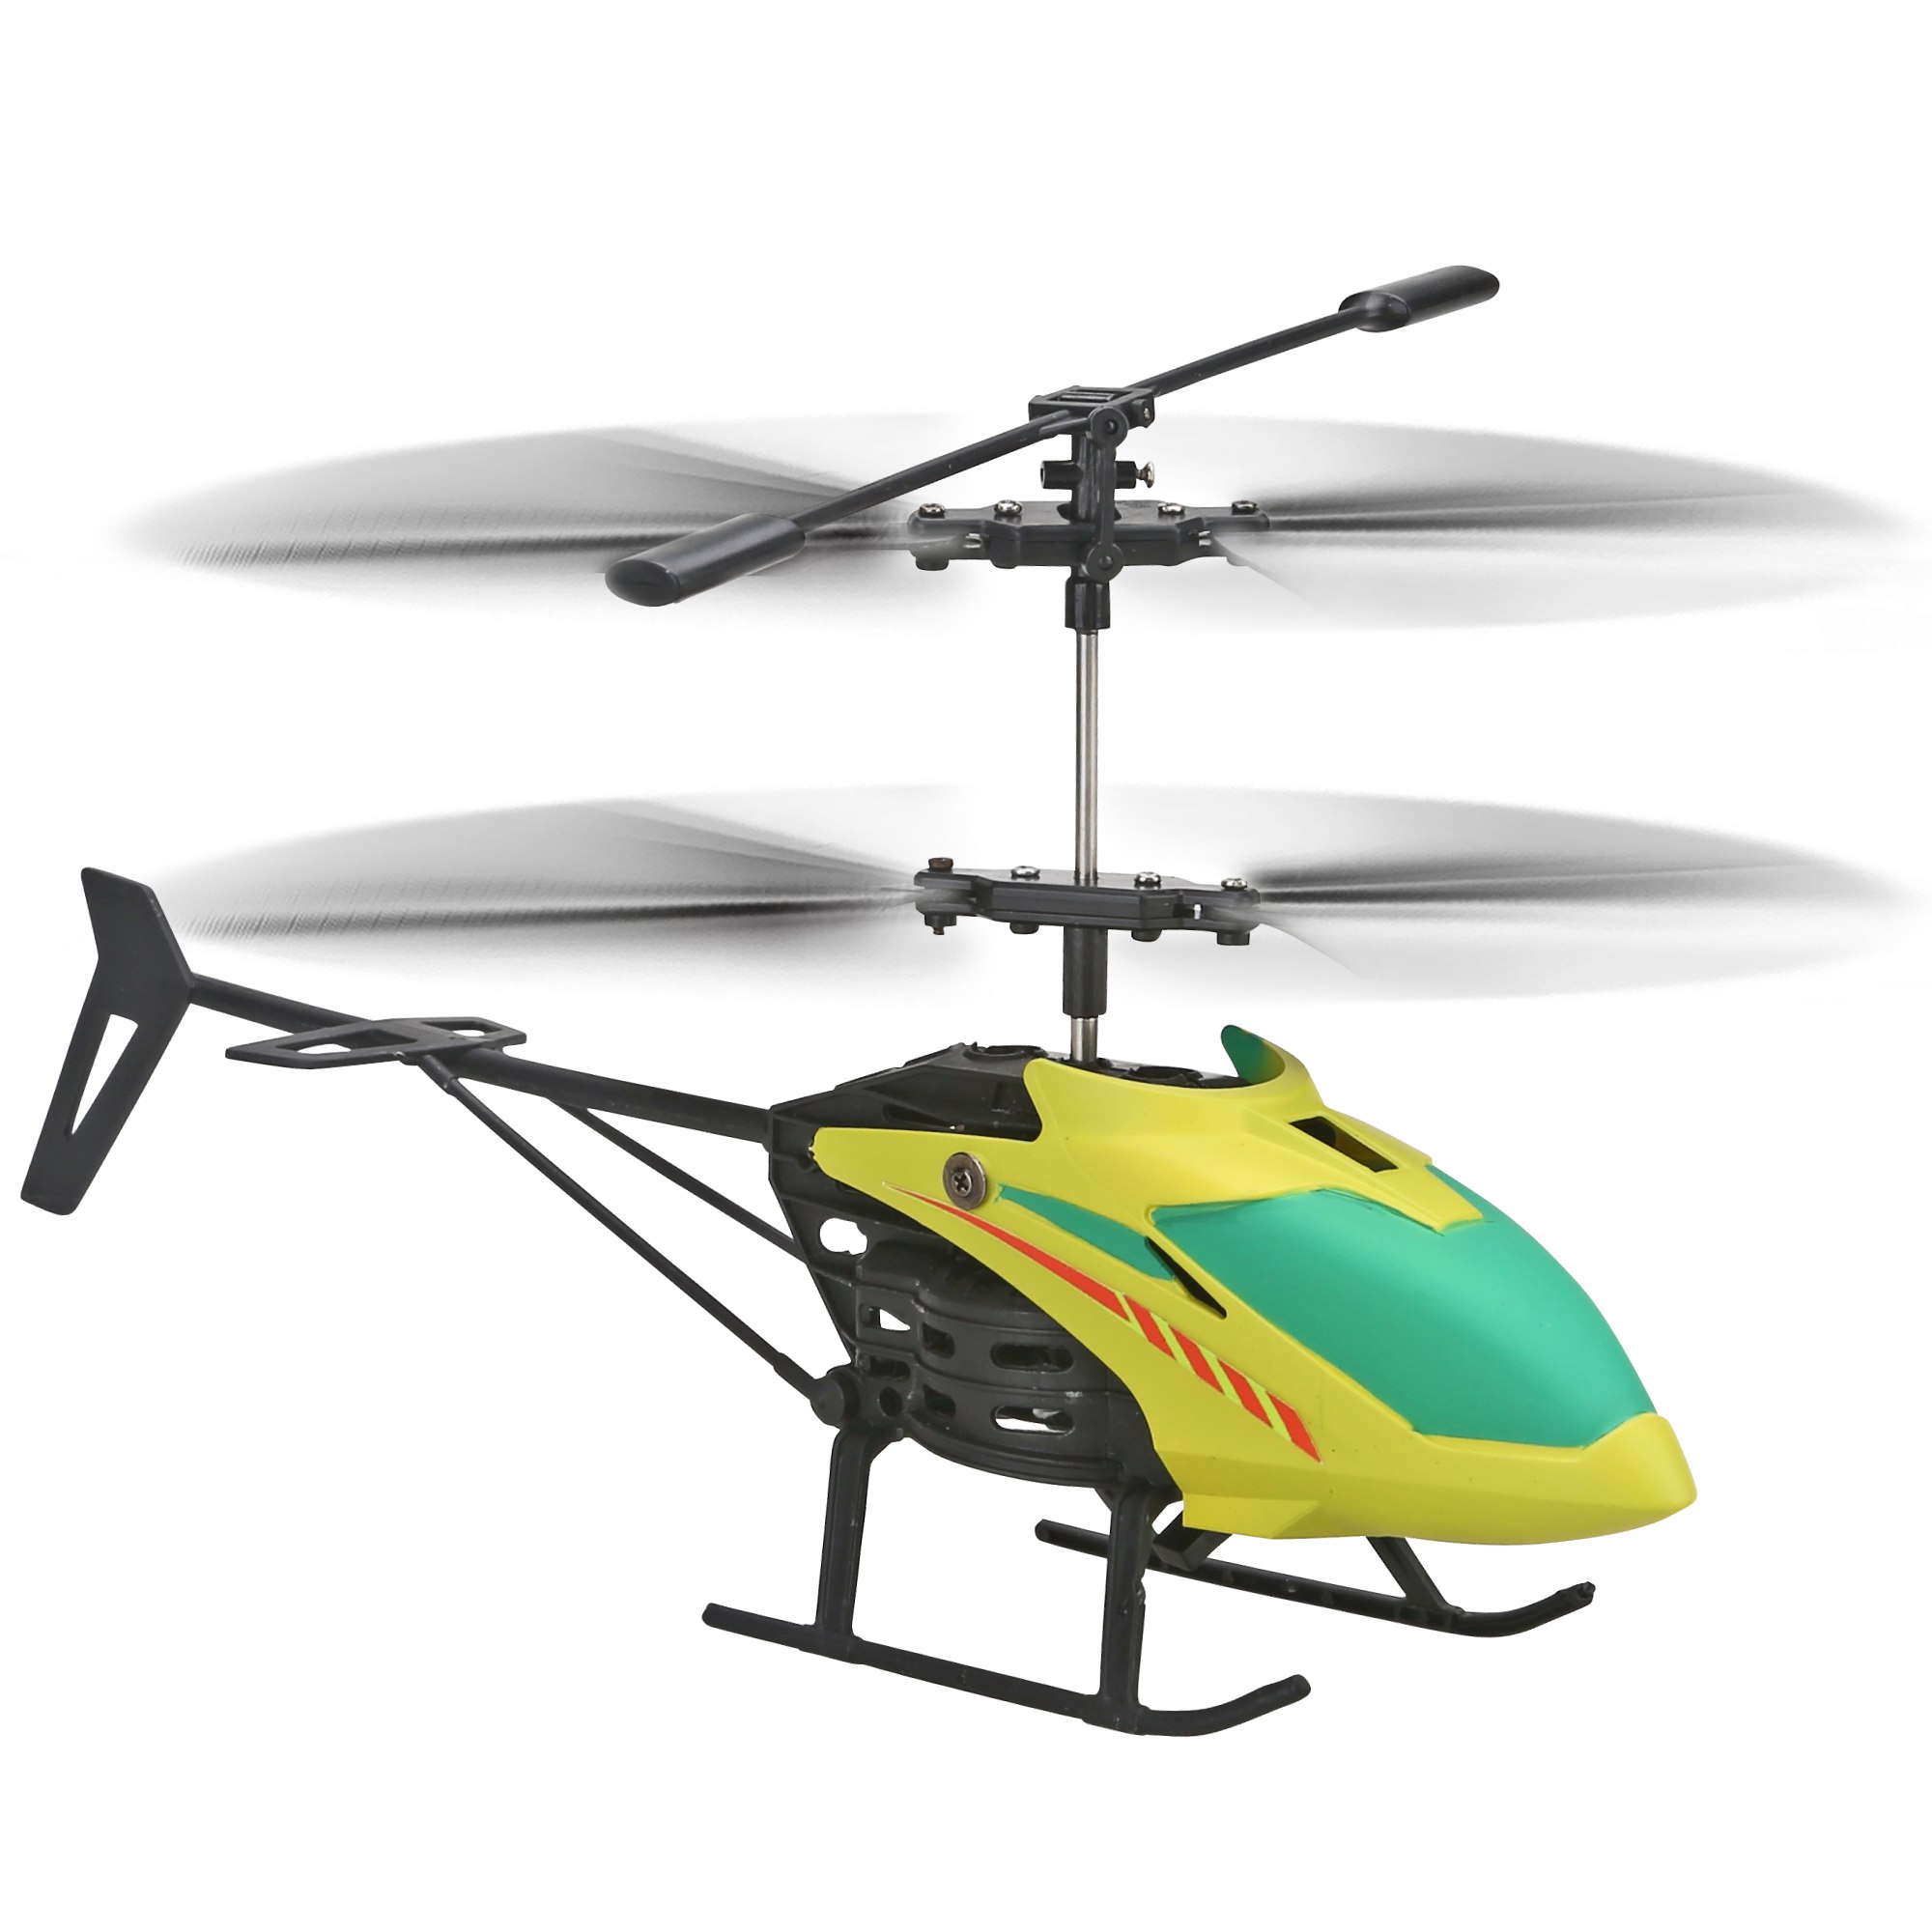 Aeroquest sky balancer - MOTOR & CO.